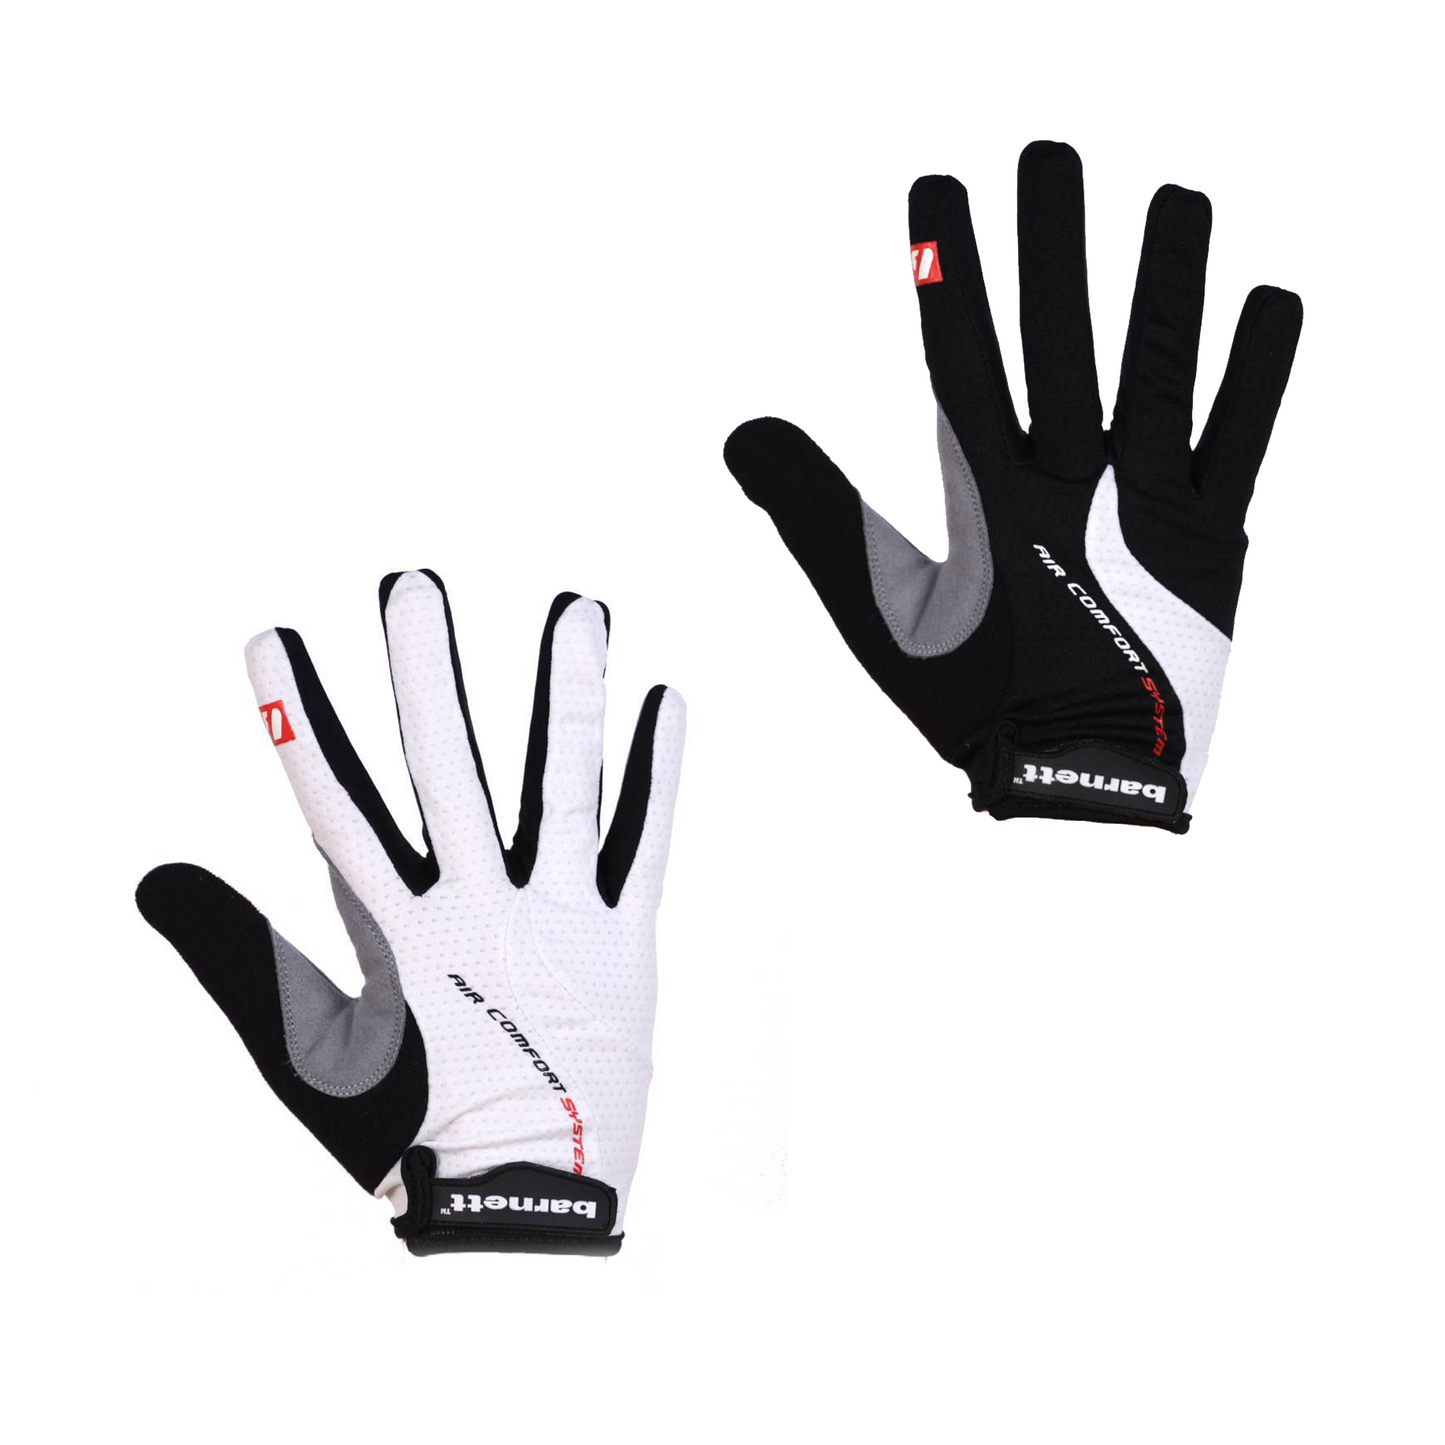 BG-01 Long bike gloves: Light, isolating, high-performance